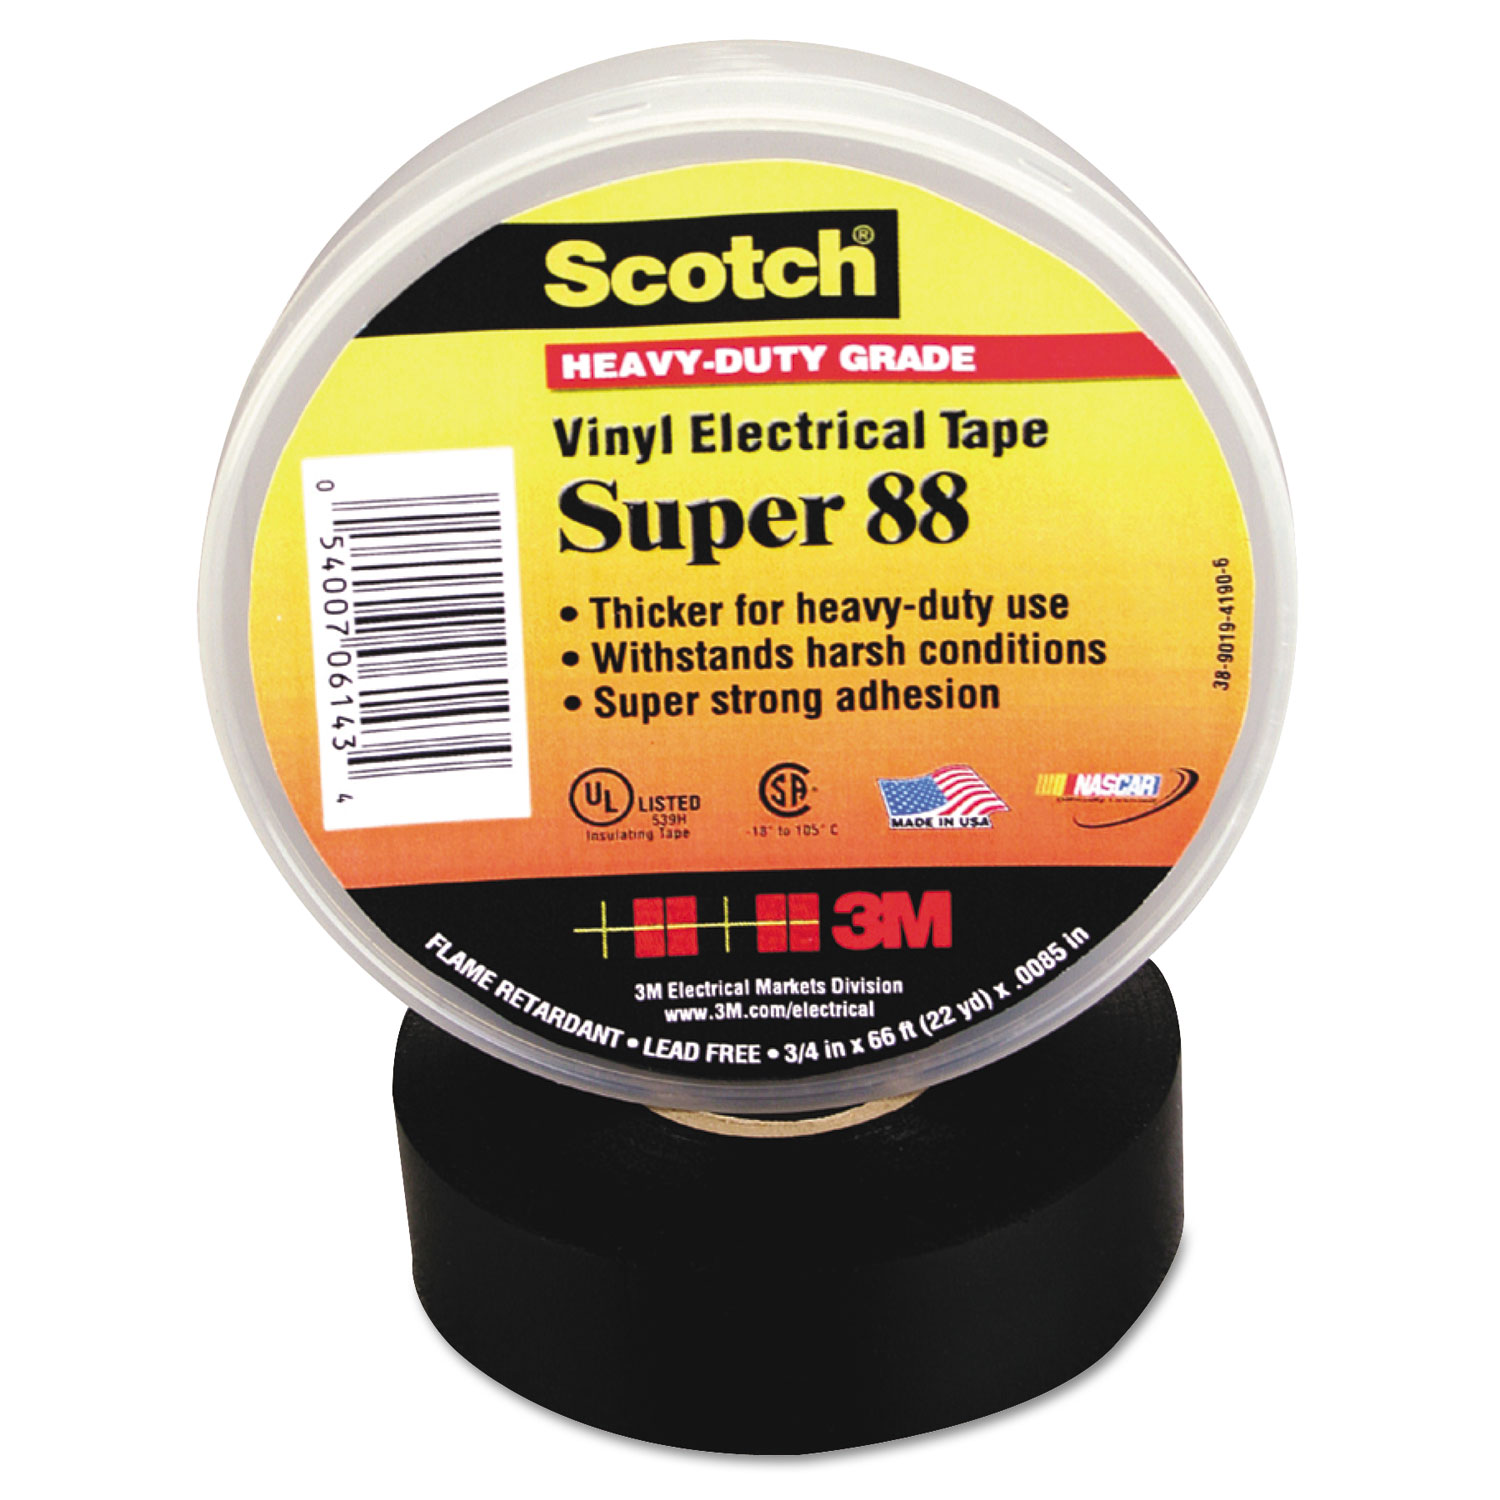 Scotch 88 Super Vinyl Electrical Tape, 2 x 36ft